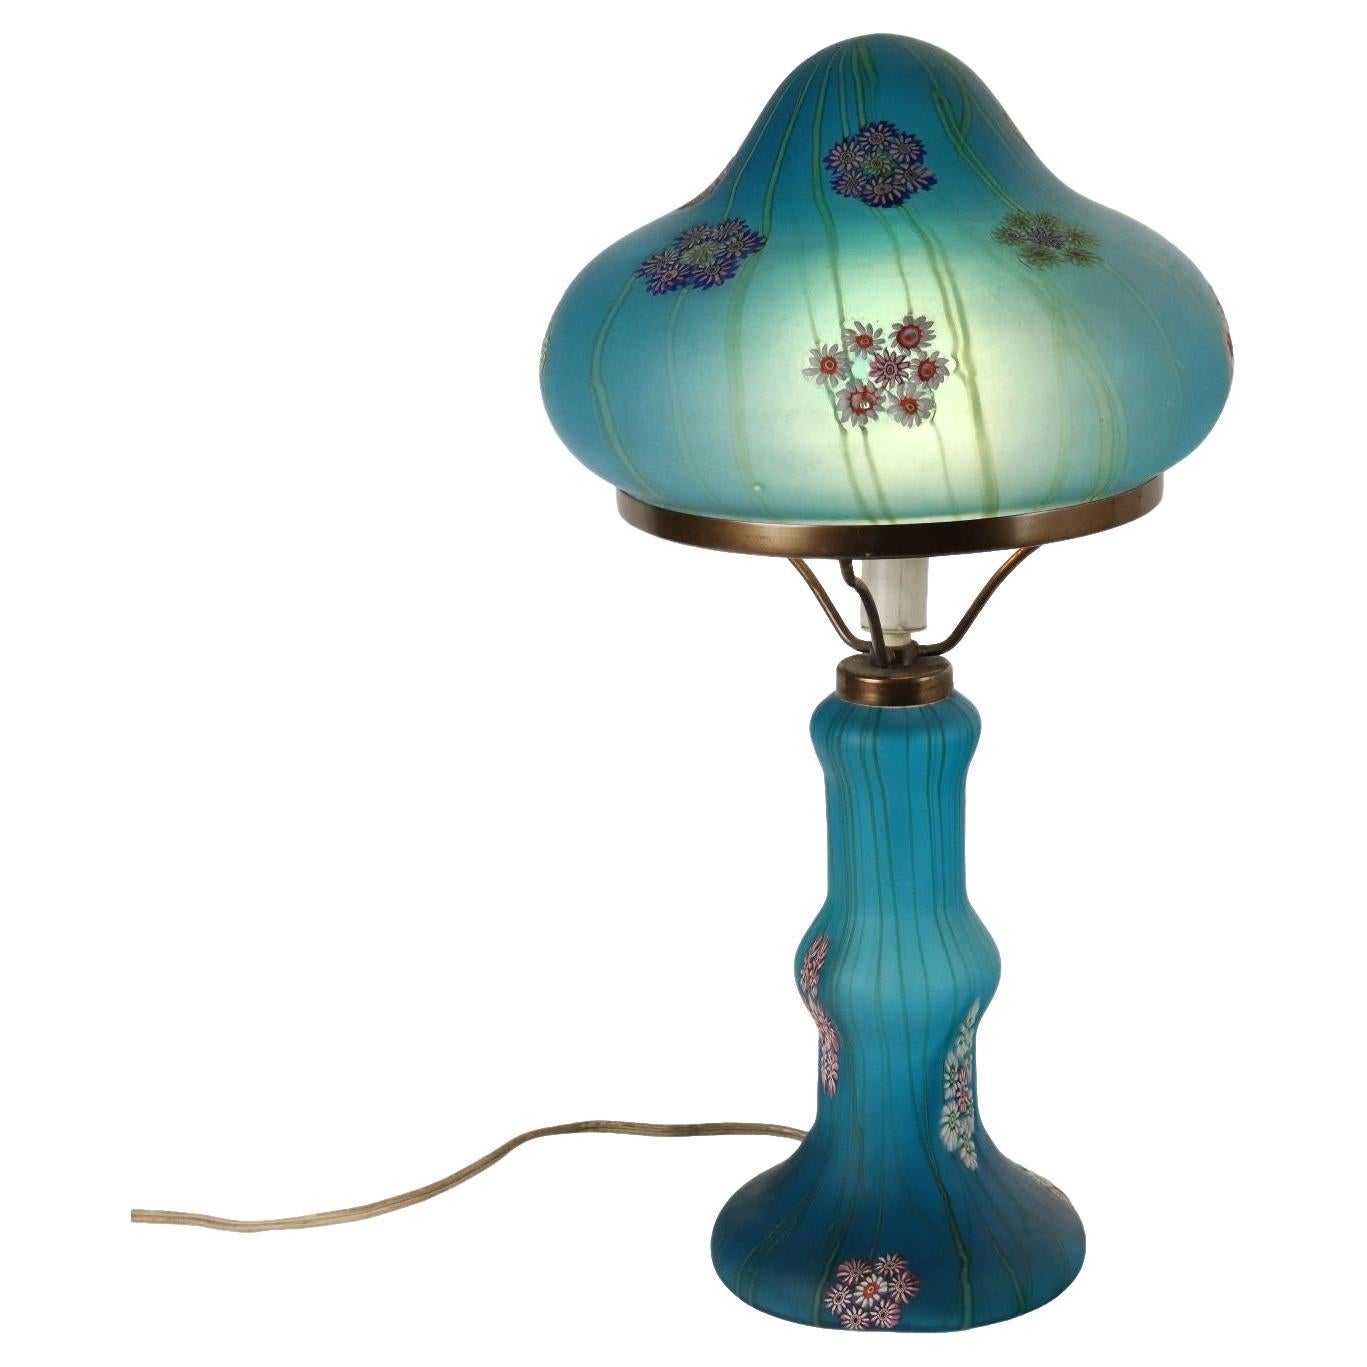 Millefiori Fratelli Toso Murano 1950s Table Lamp